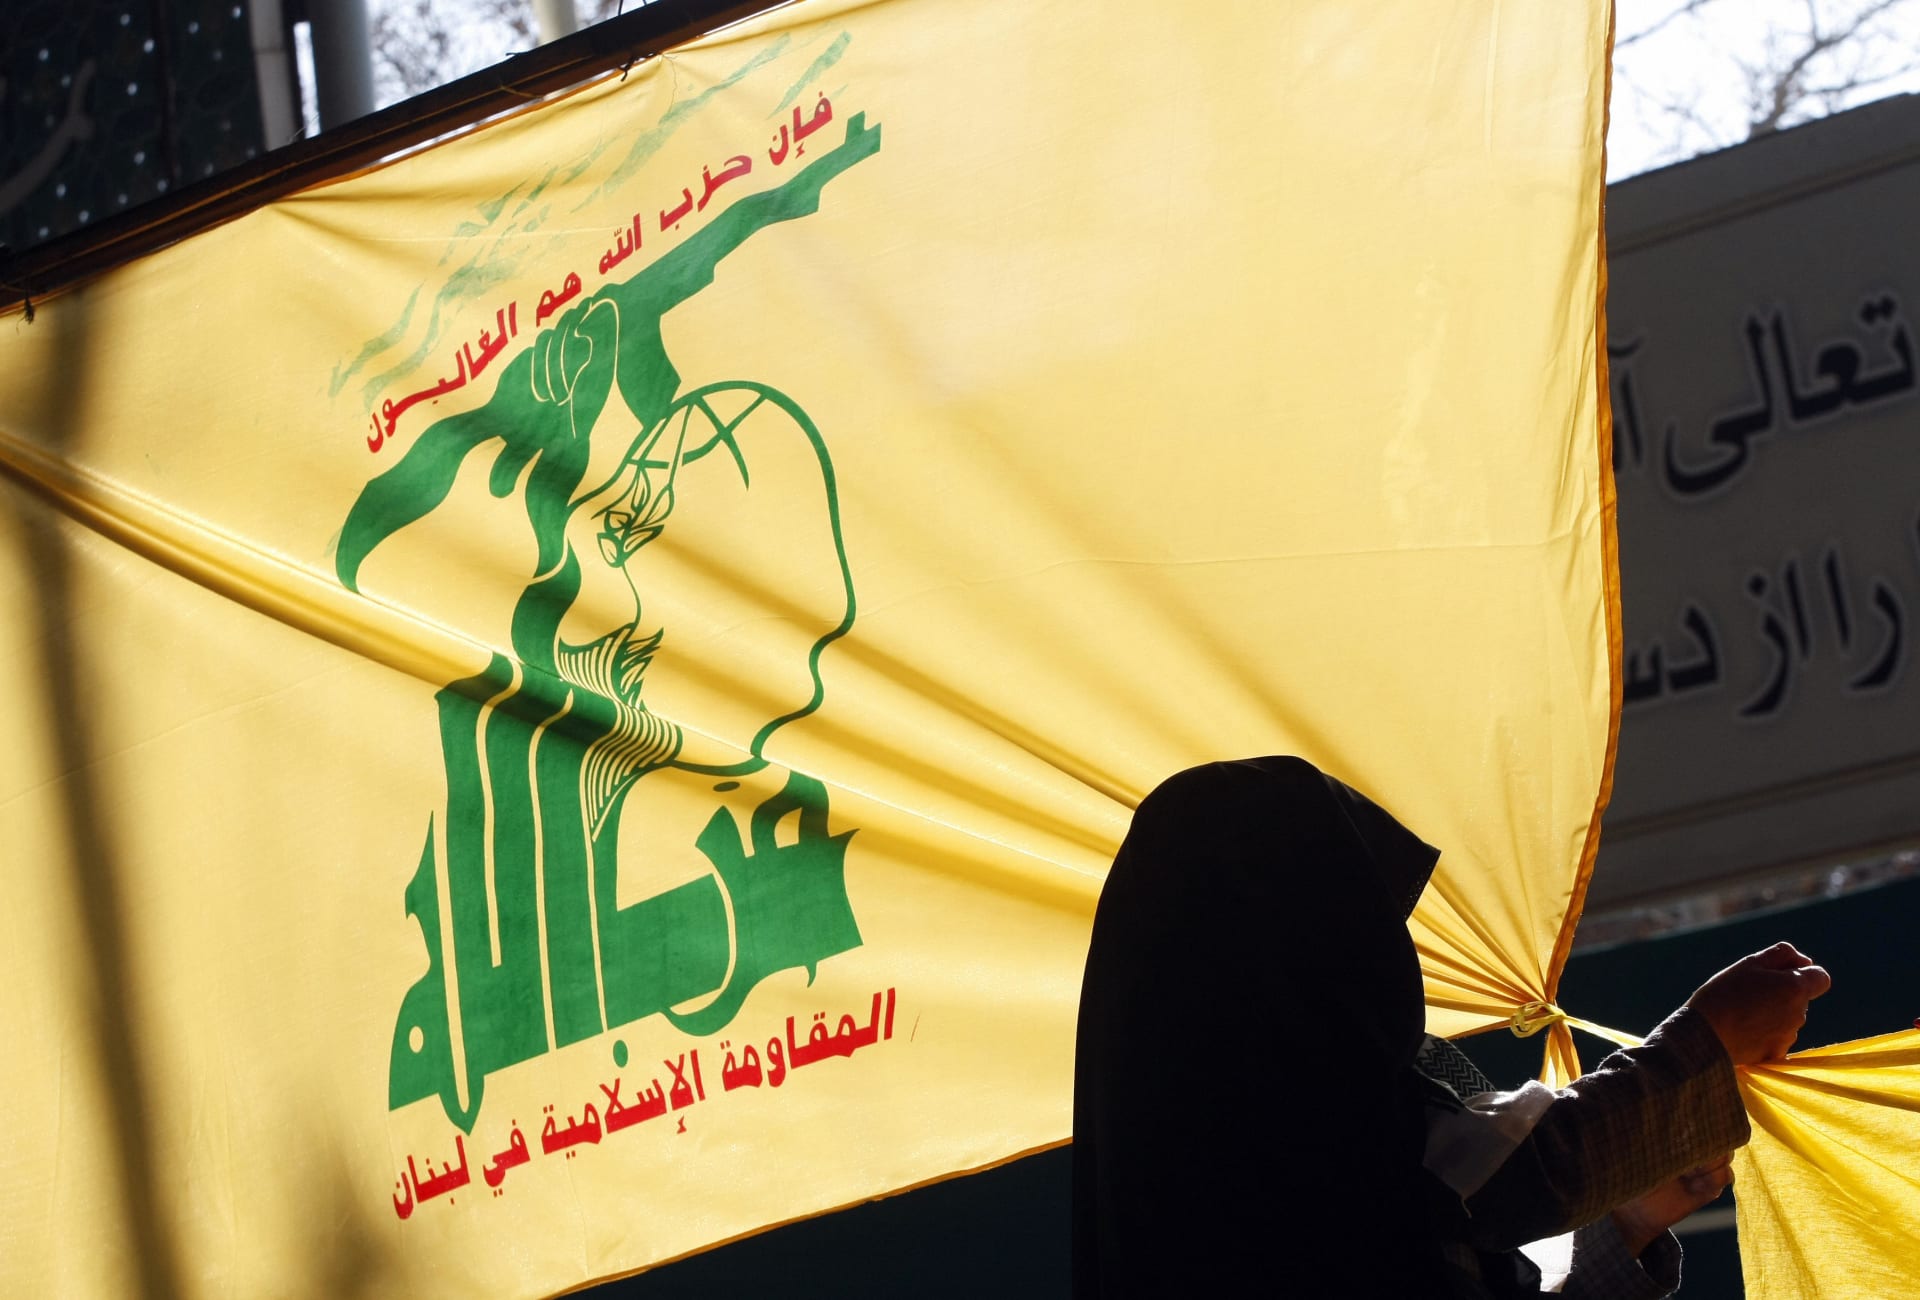 حزب الله يهاجم السعودية بسبب إعدام 81 فردا يصفهم بـ"الثلة المؤمنة"